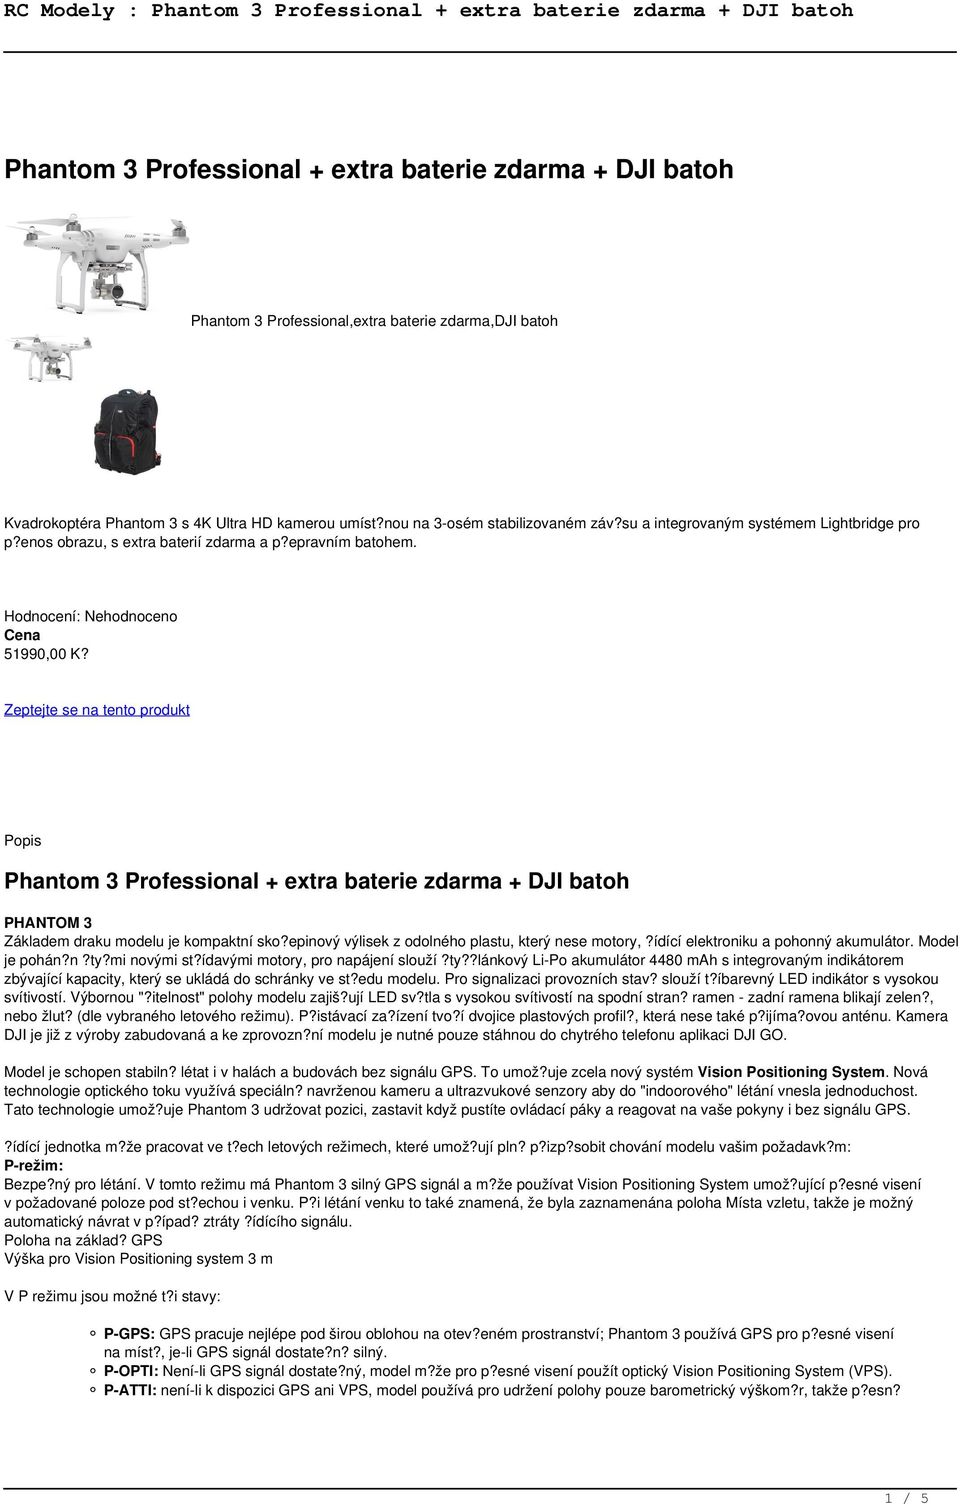 Zeptejte se na tento produkt Popis Phantom 3 Professional + extra baterie zdarma + DJI batoh PHANTOM 3 Základem draku modelu je kompaktní sko?epinový výlisek z odolného plastu, který nese motory,?